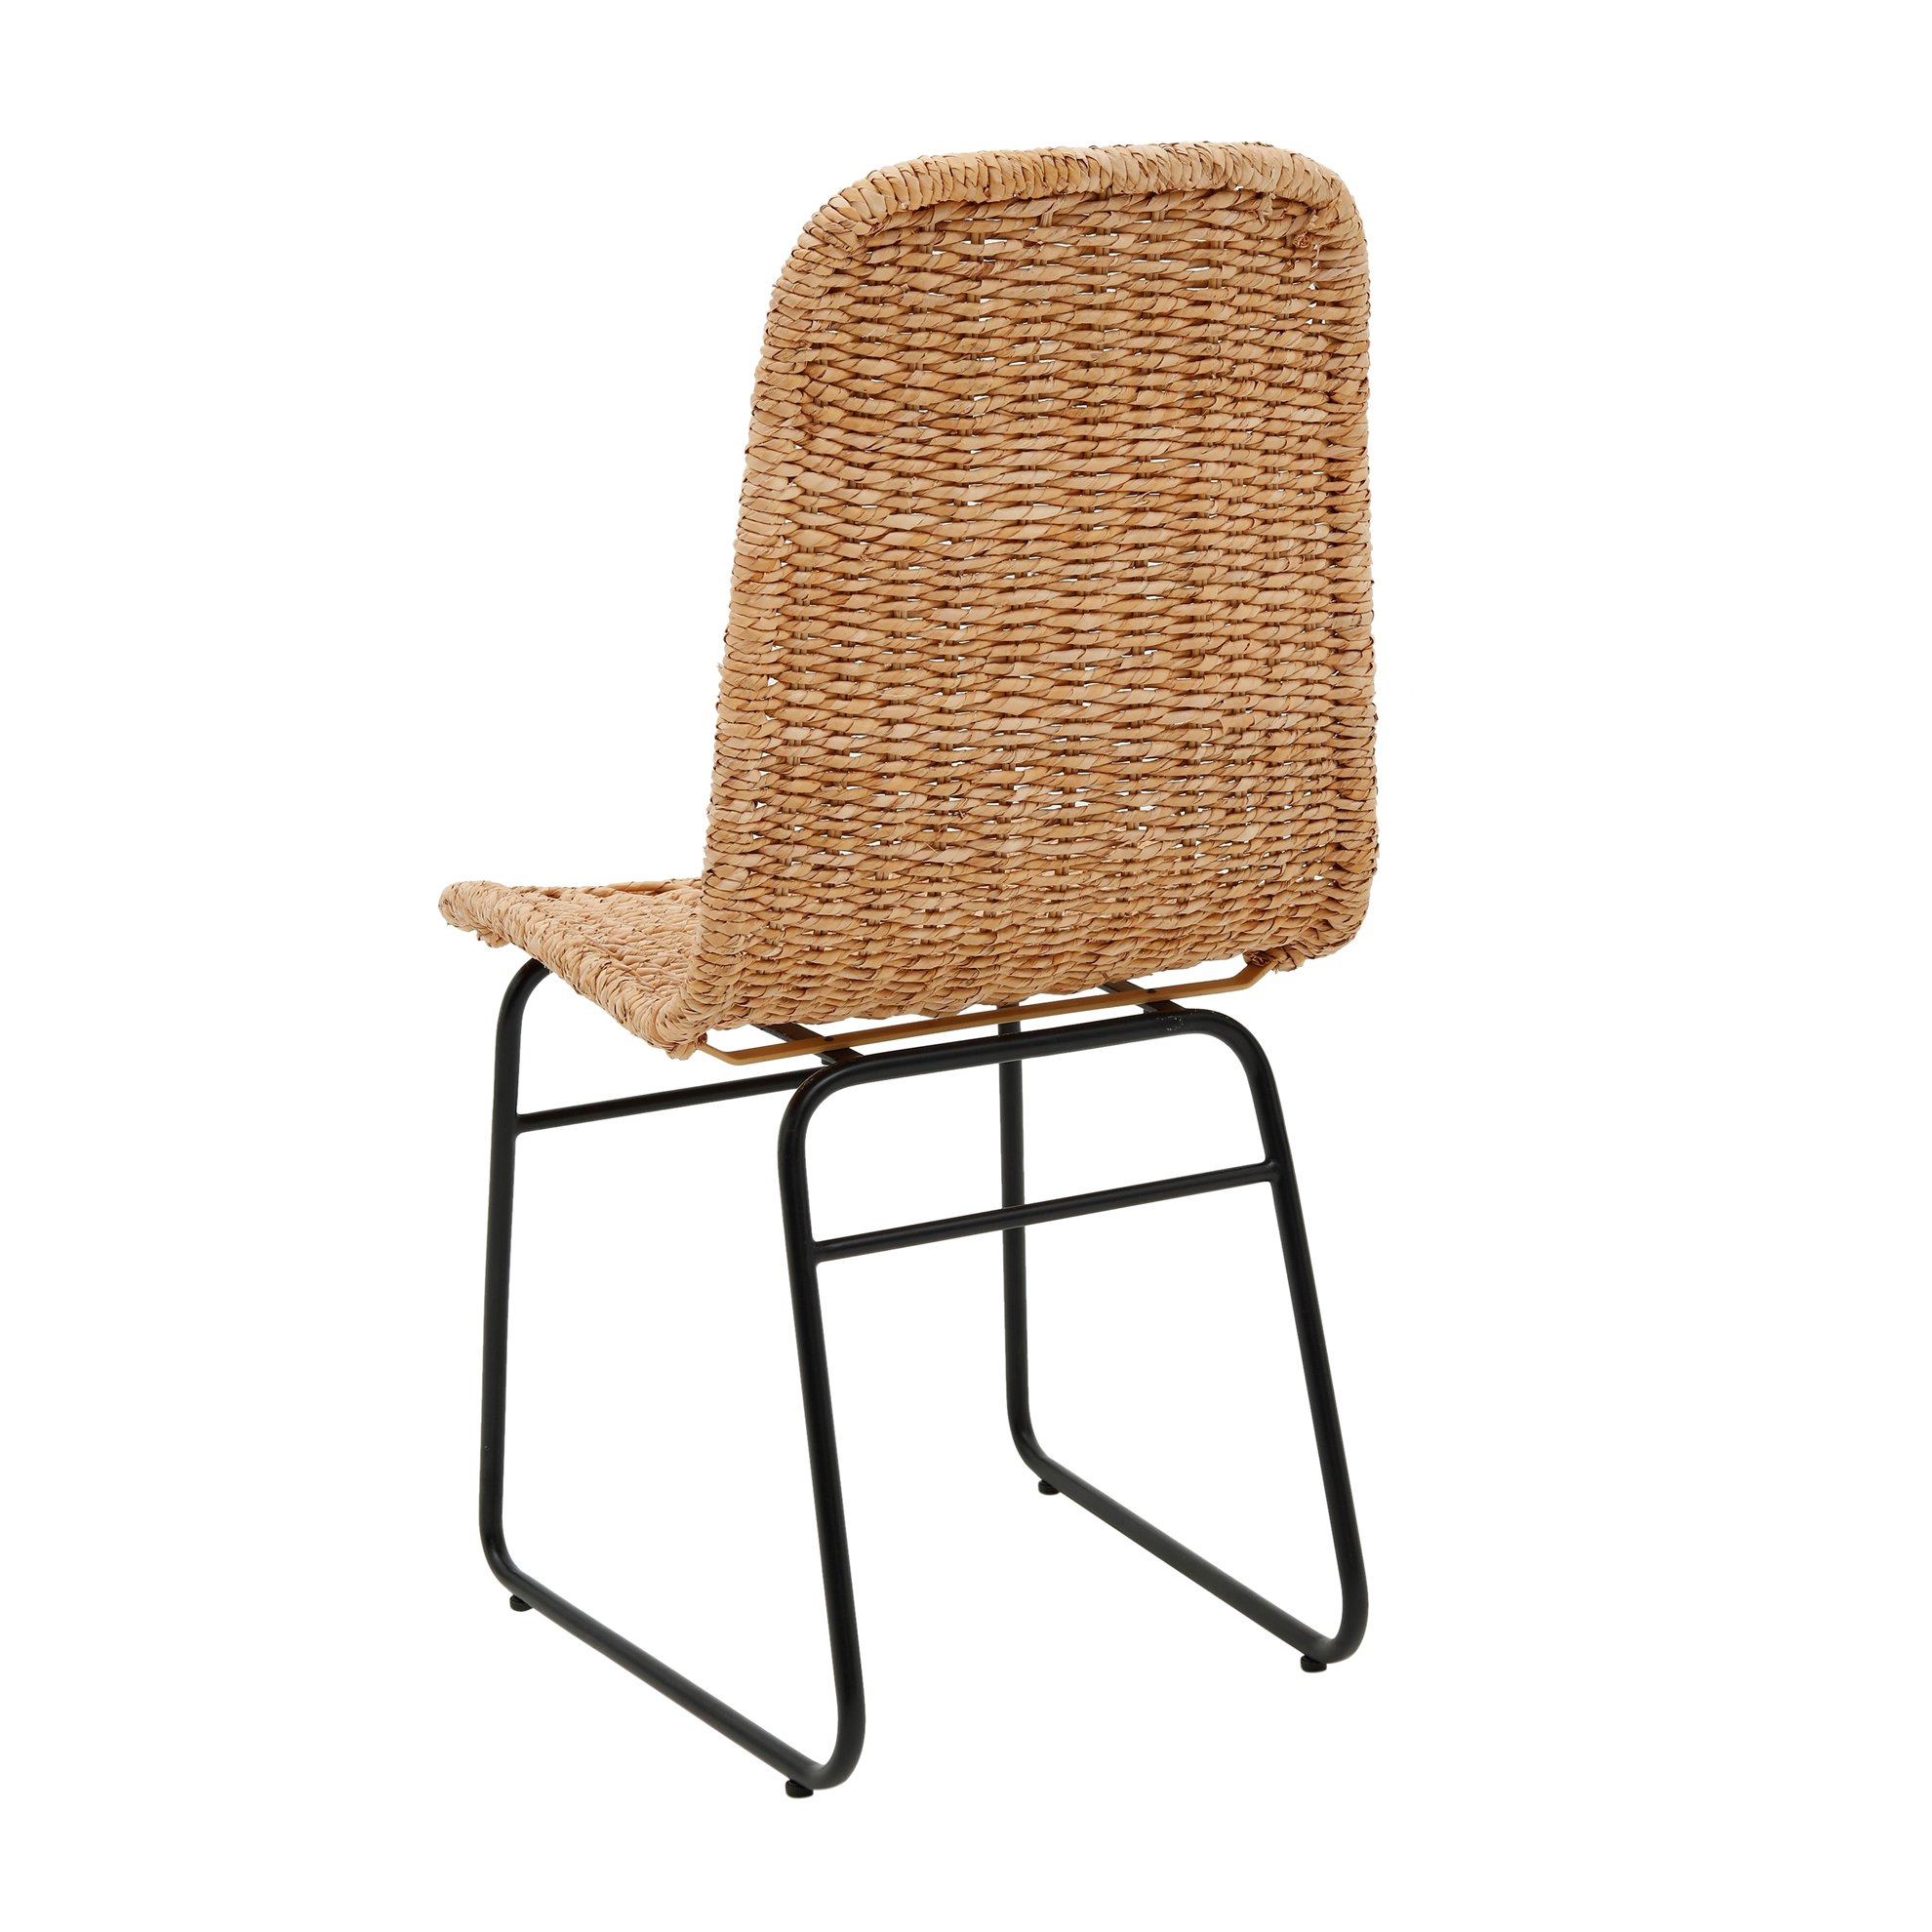 Hasır Sandalye (55x45x85cm)